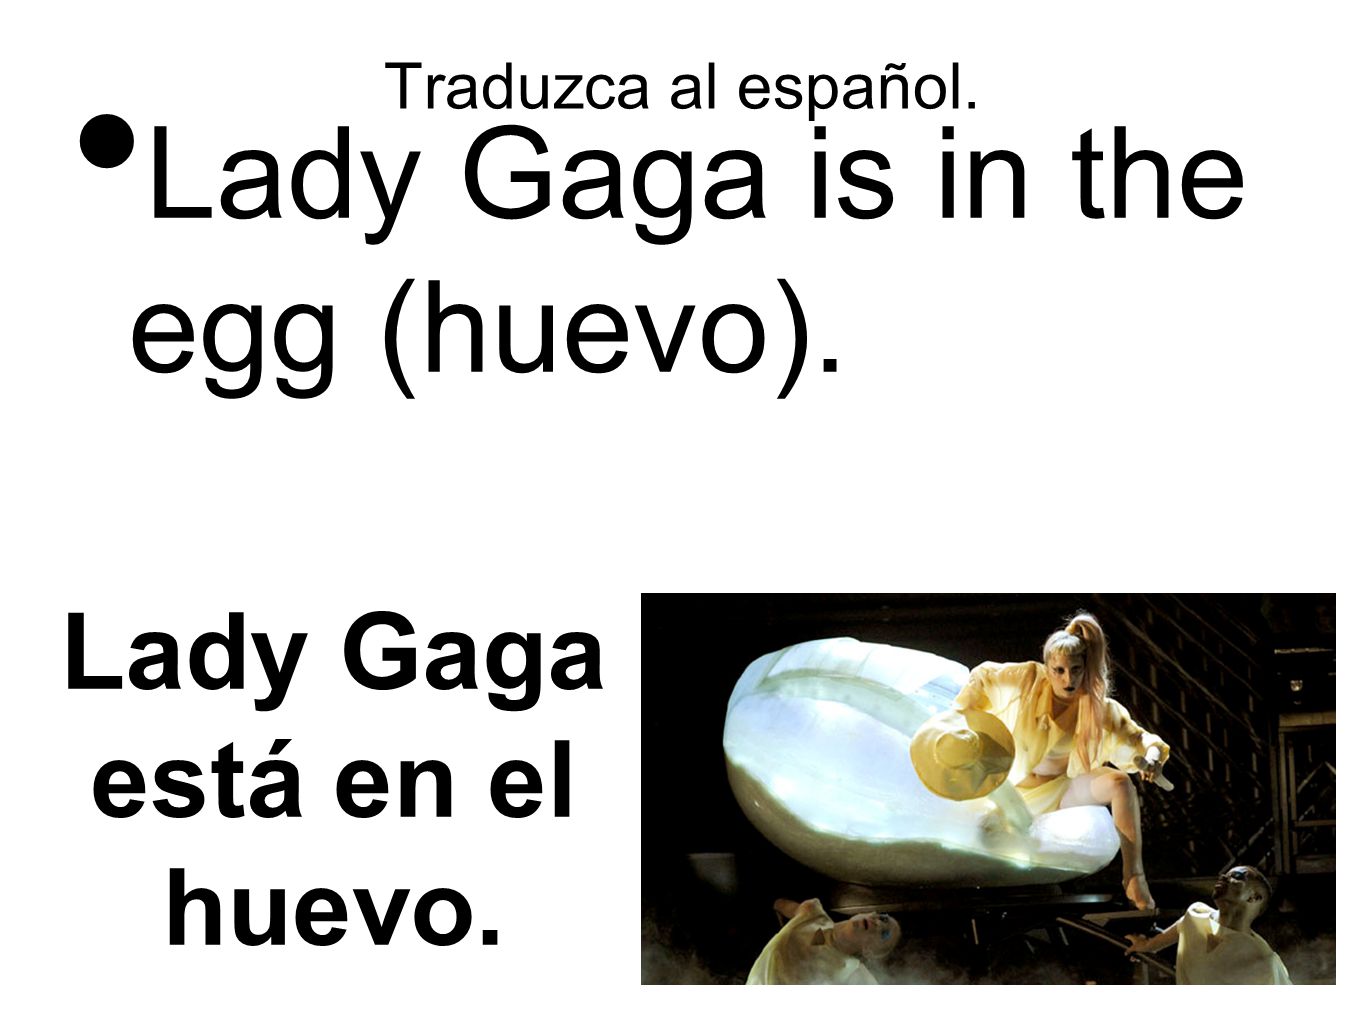 Lady Gaga está en el huevo.